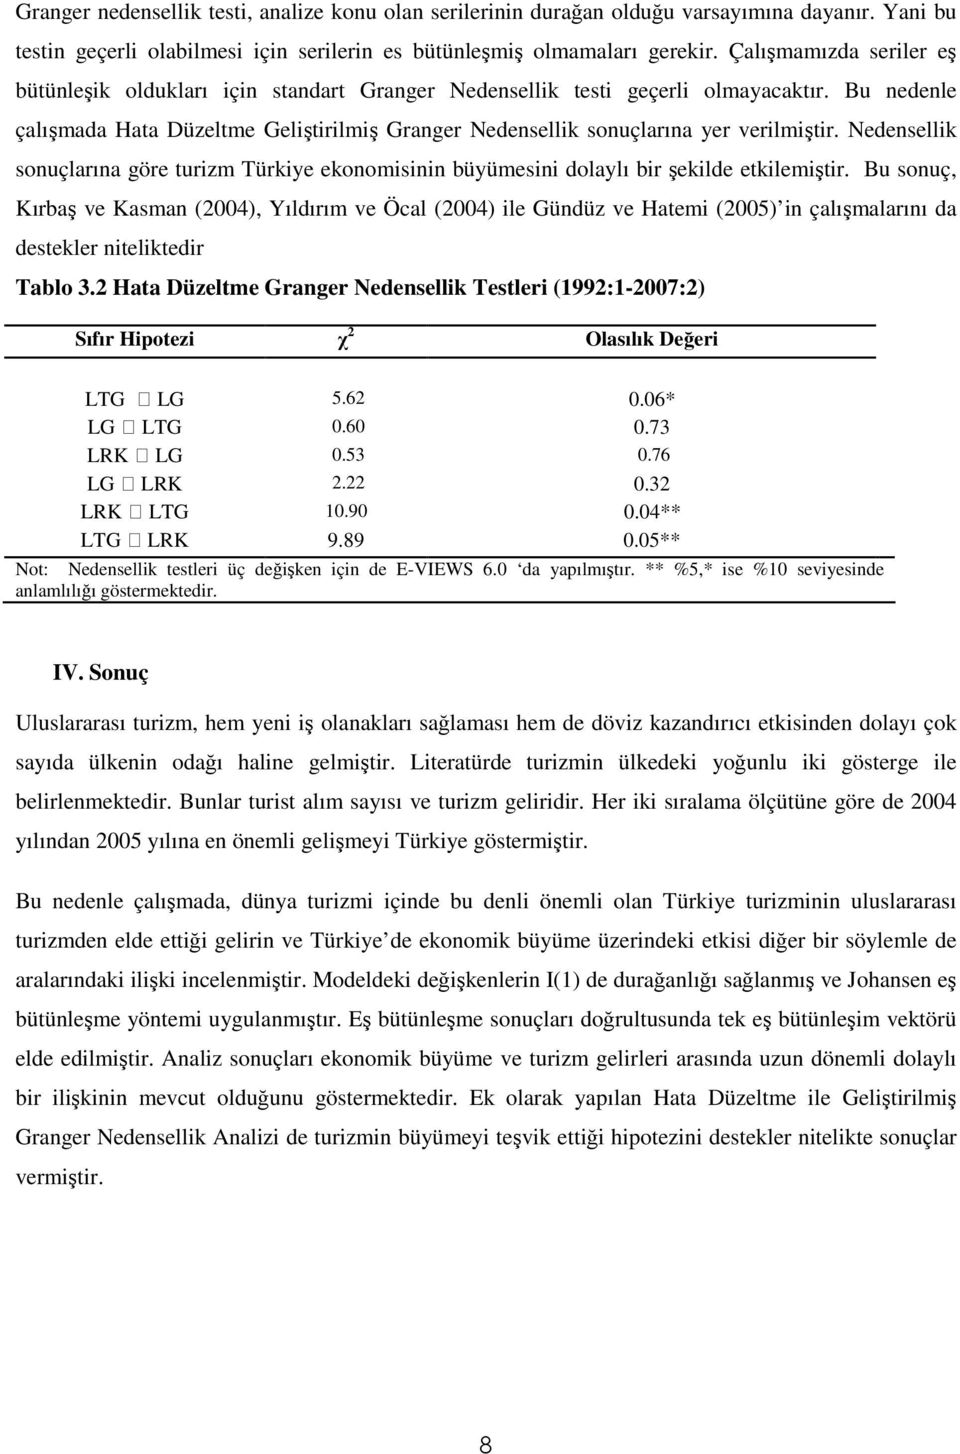 Bu nedenle çalışmada Hata Düzeltme Geliştirilmiş Granger Nedensellik sonuçlarına yer verilmiştir. Nedensellik sonuçlarına göre turizm Türkiye ekonomisinin büyümesini dolaylı bir şekilde etkilemiştir.